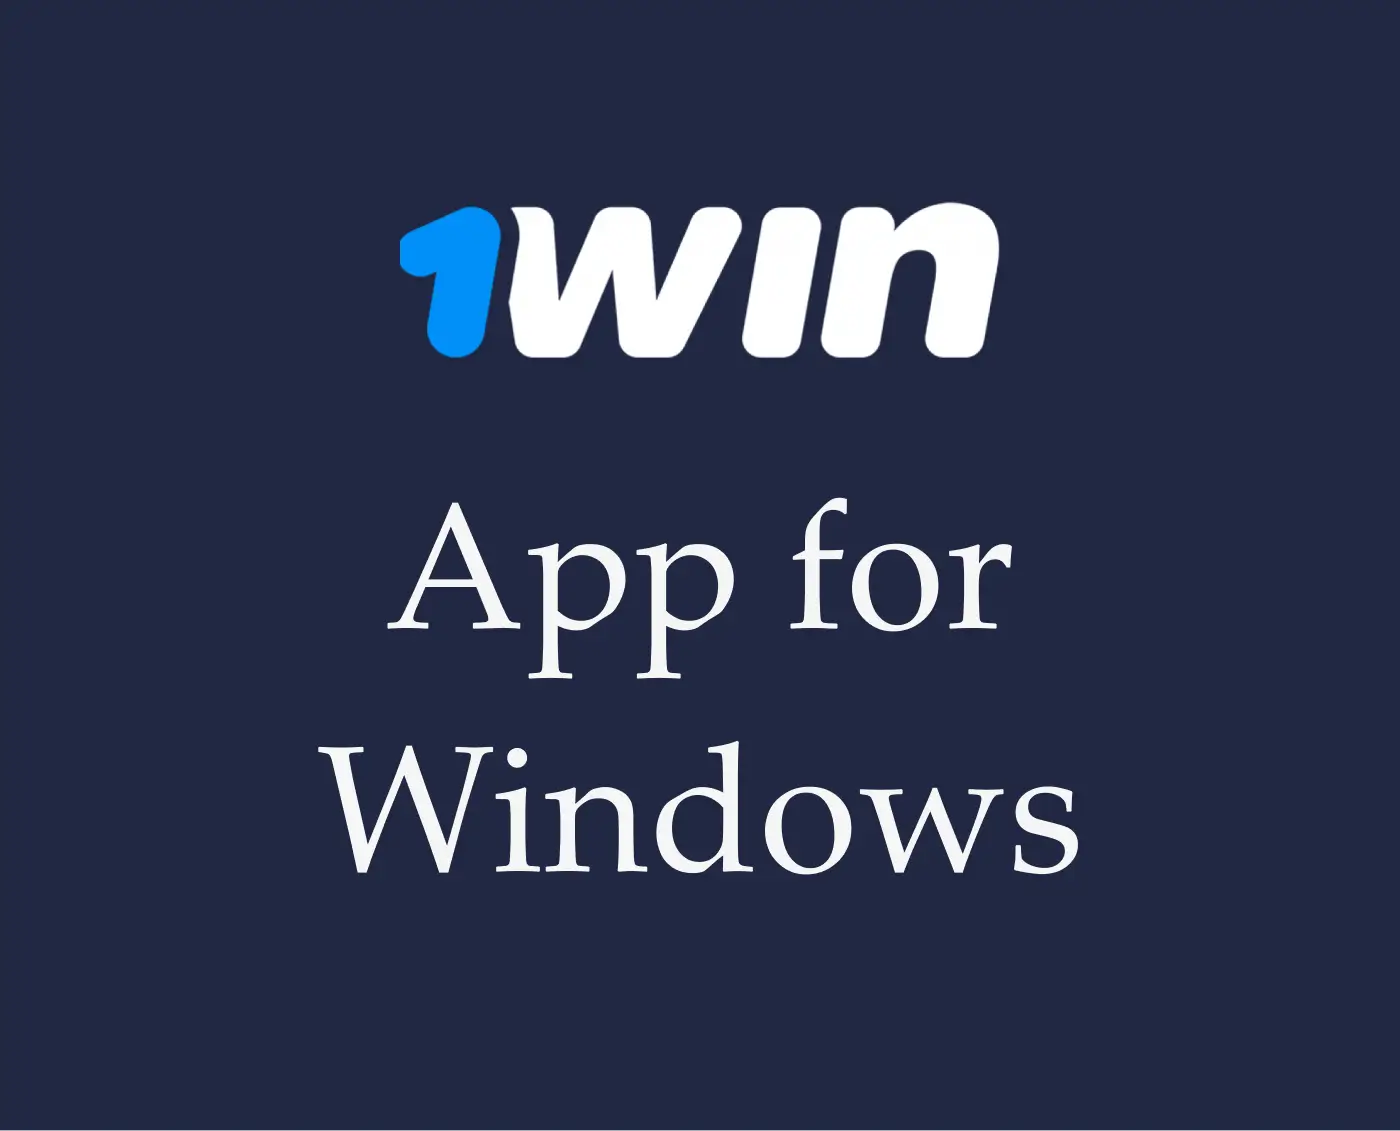 Aplicación 1win para Windows